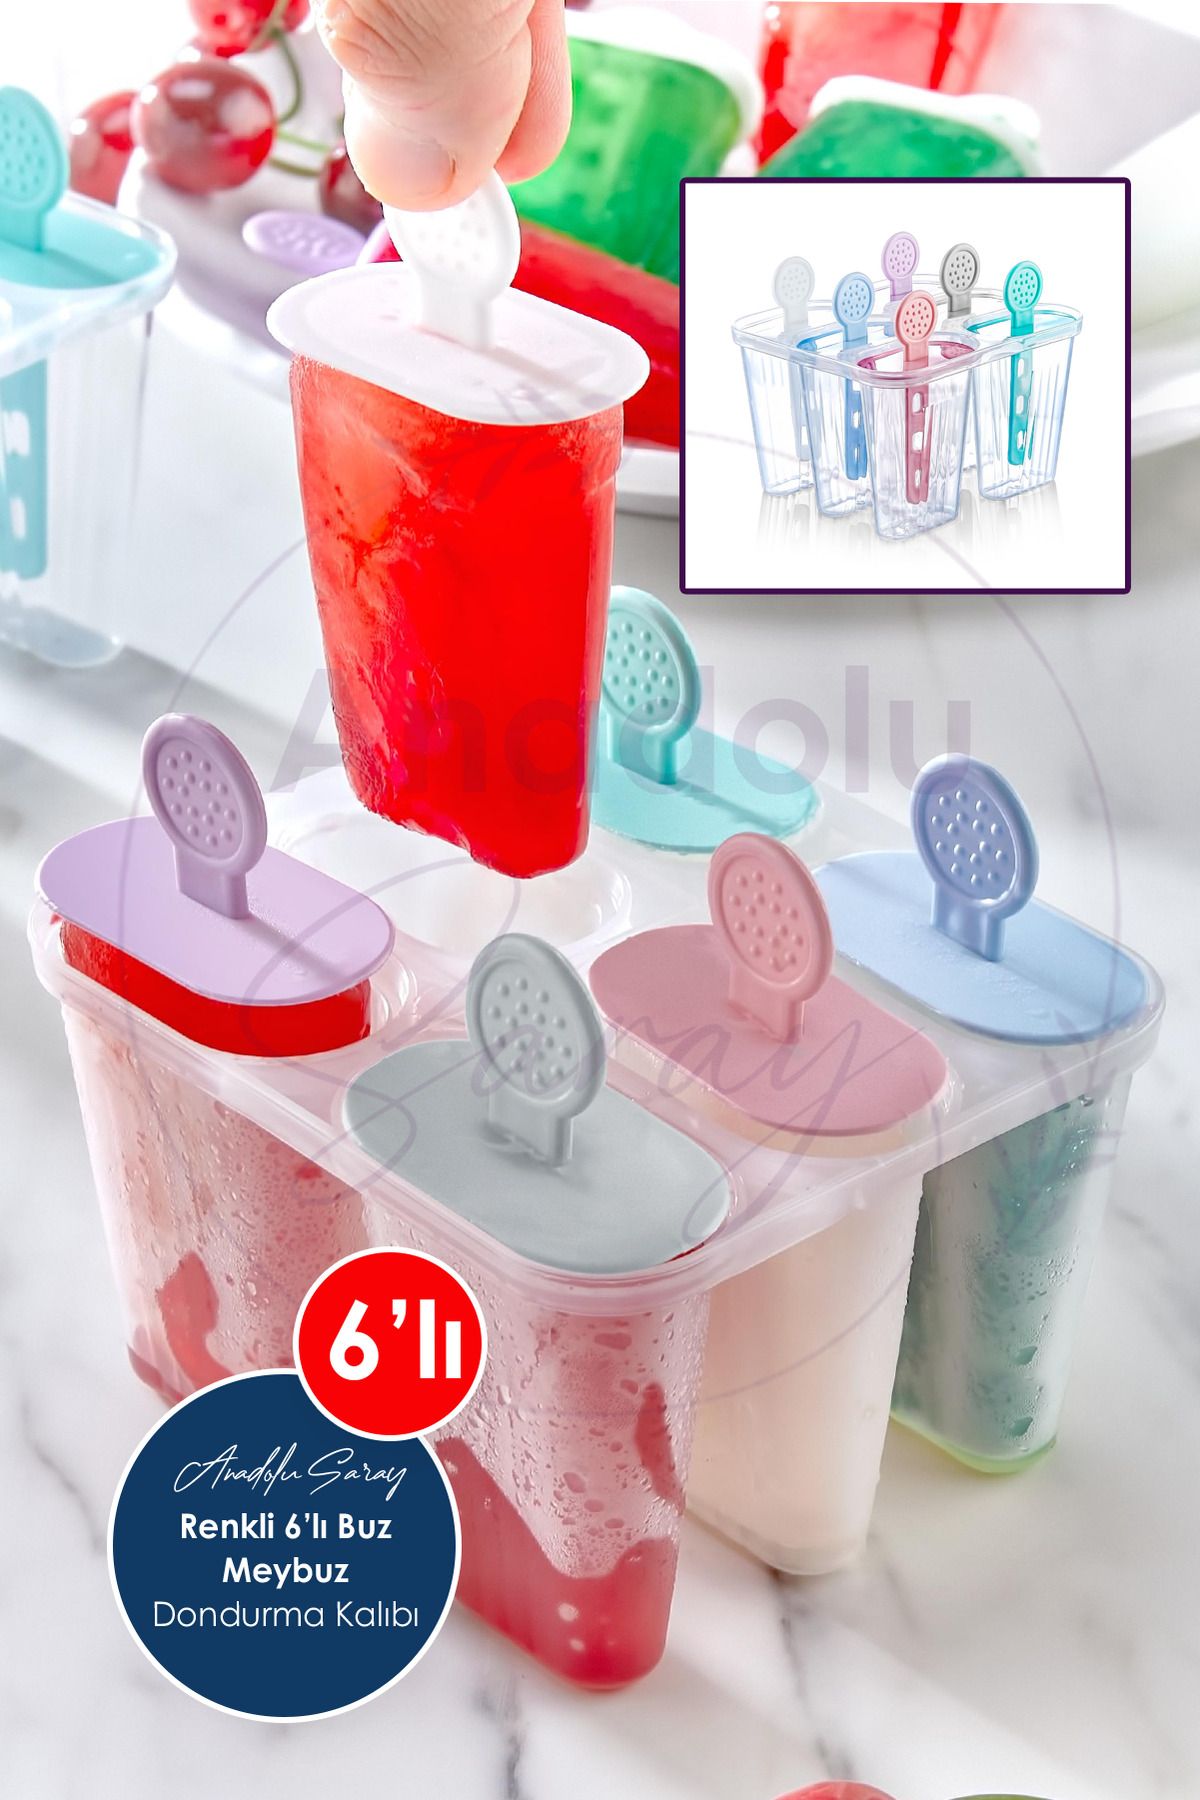 Anadolu Saray Renkli Pratik 6'lı Meybuz Buz Dondurma Kalıbı | 6 Adet Buz Meybuz Ve Dondurma Kalıbı